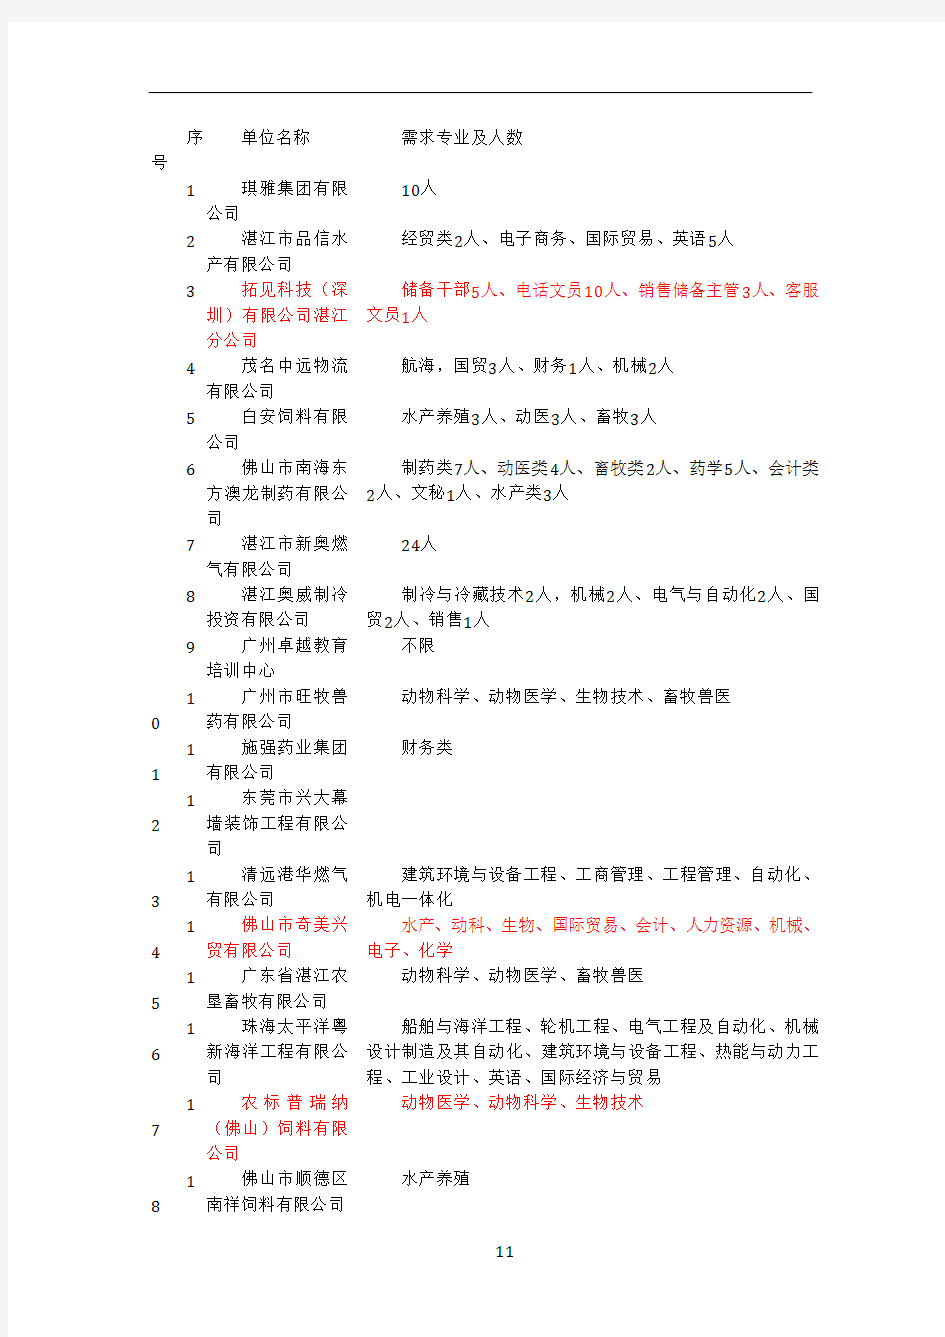 (最新)2012粤西招聘会企业资料和专业岗位